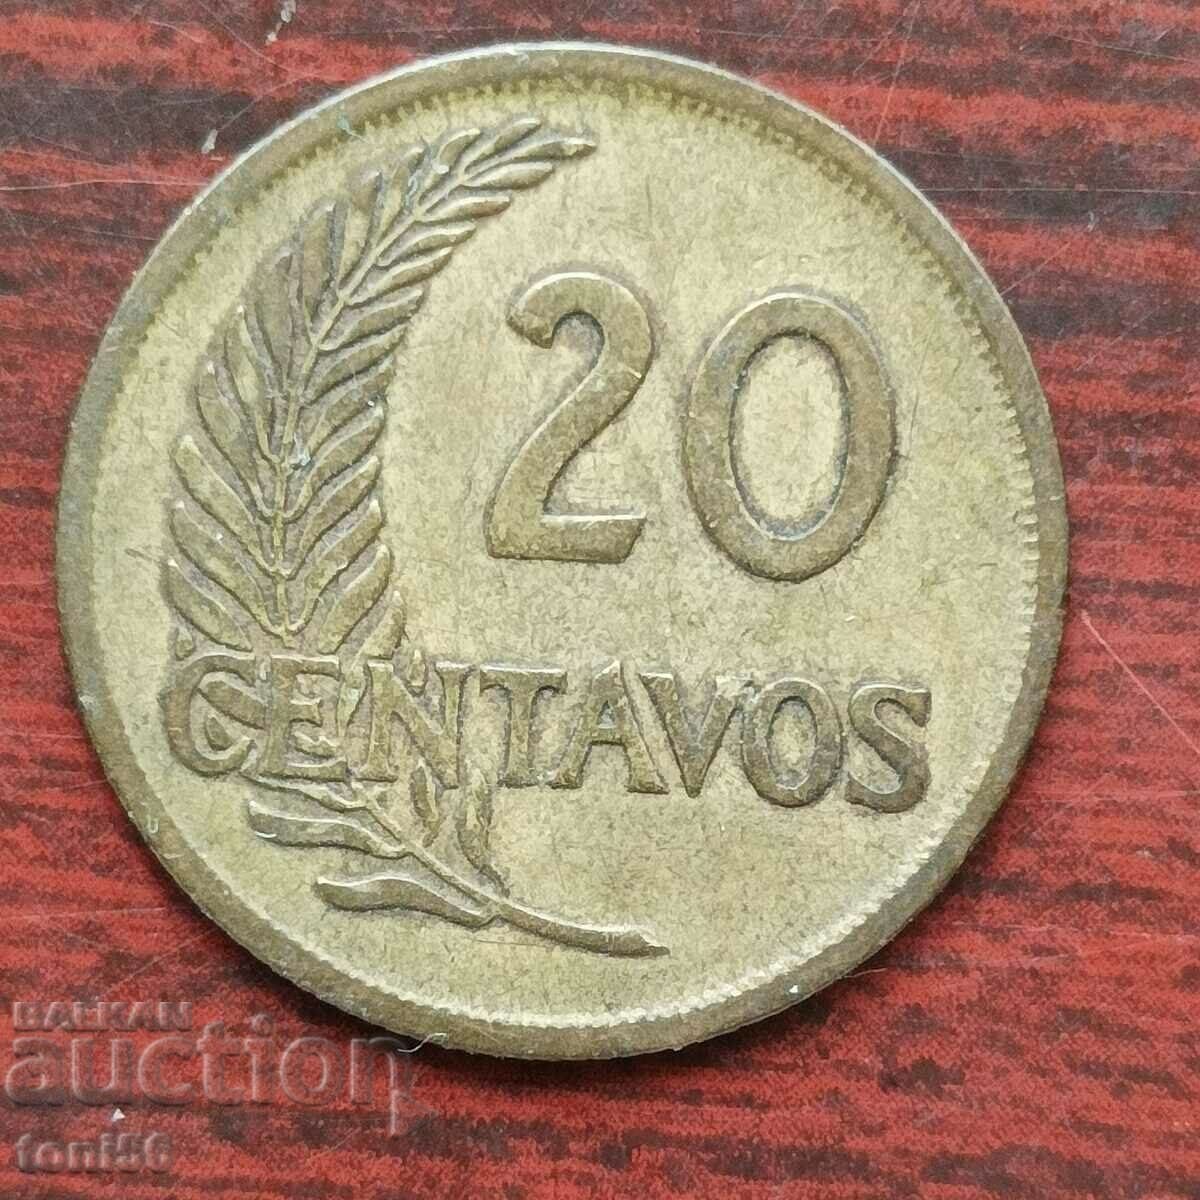 Peru 20 centavos 1952